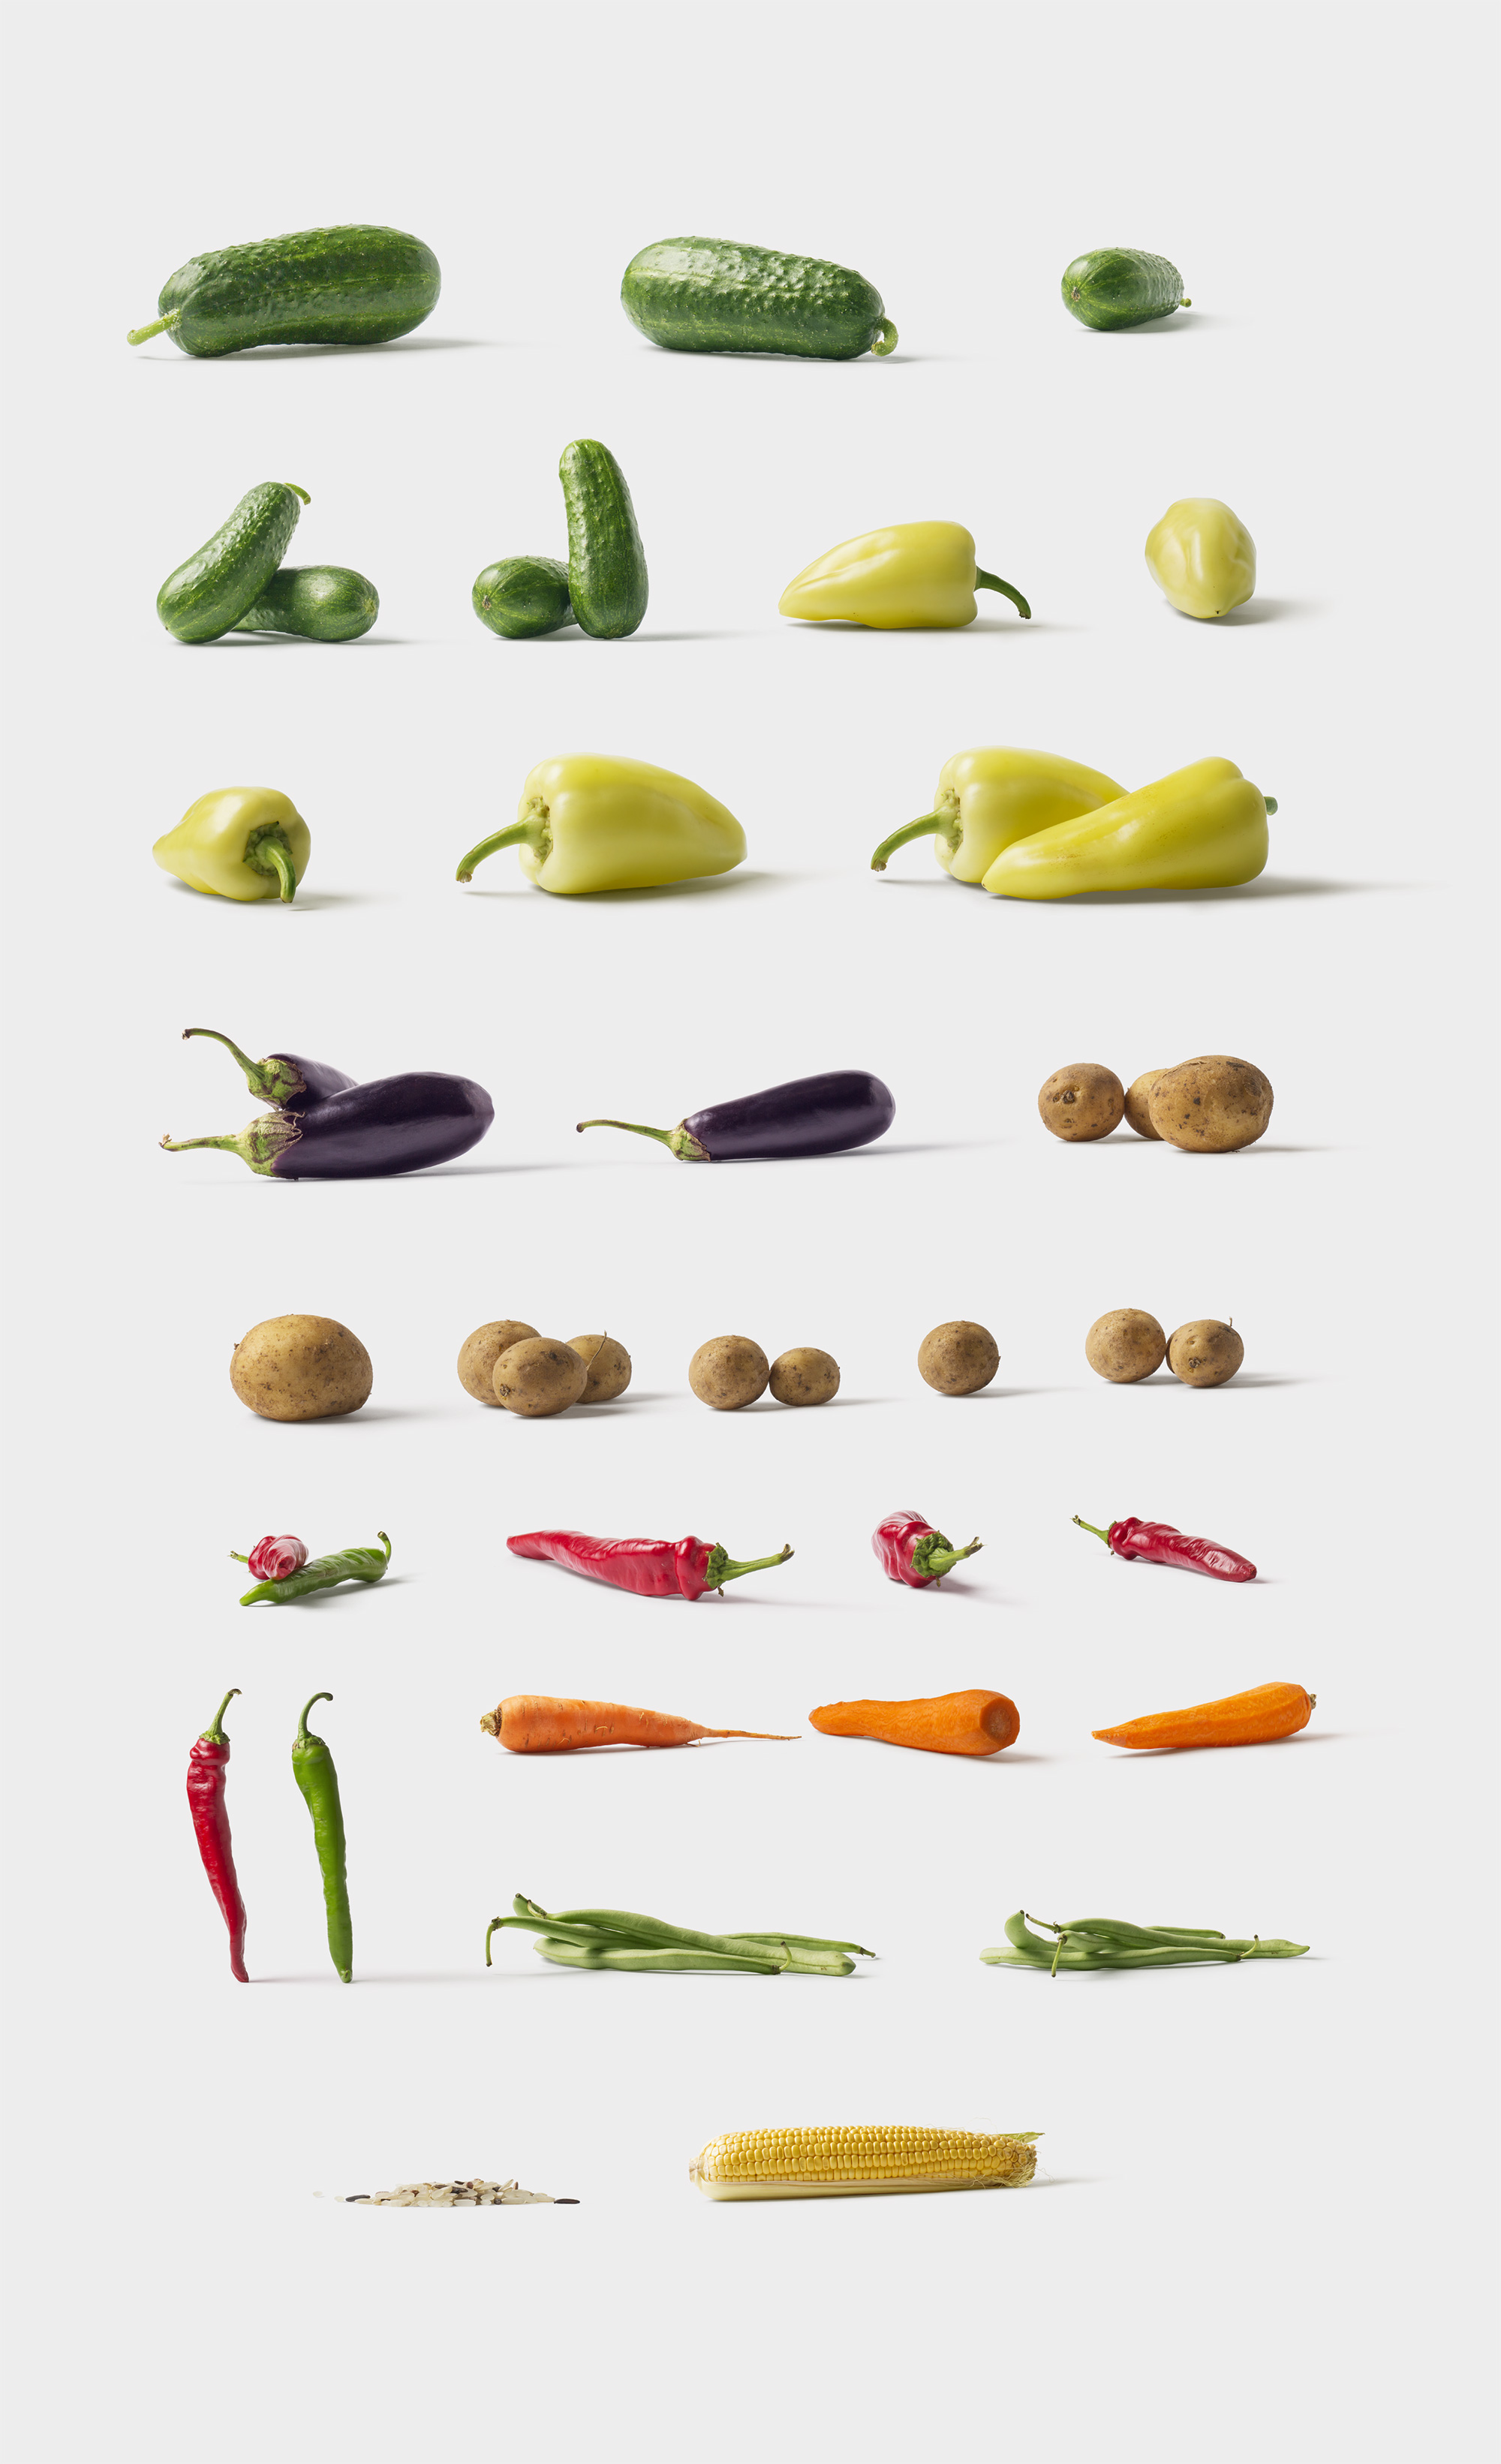 海量蔬菜水果高清实物照片样机素材Fruits and Vegetables插图(5)